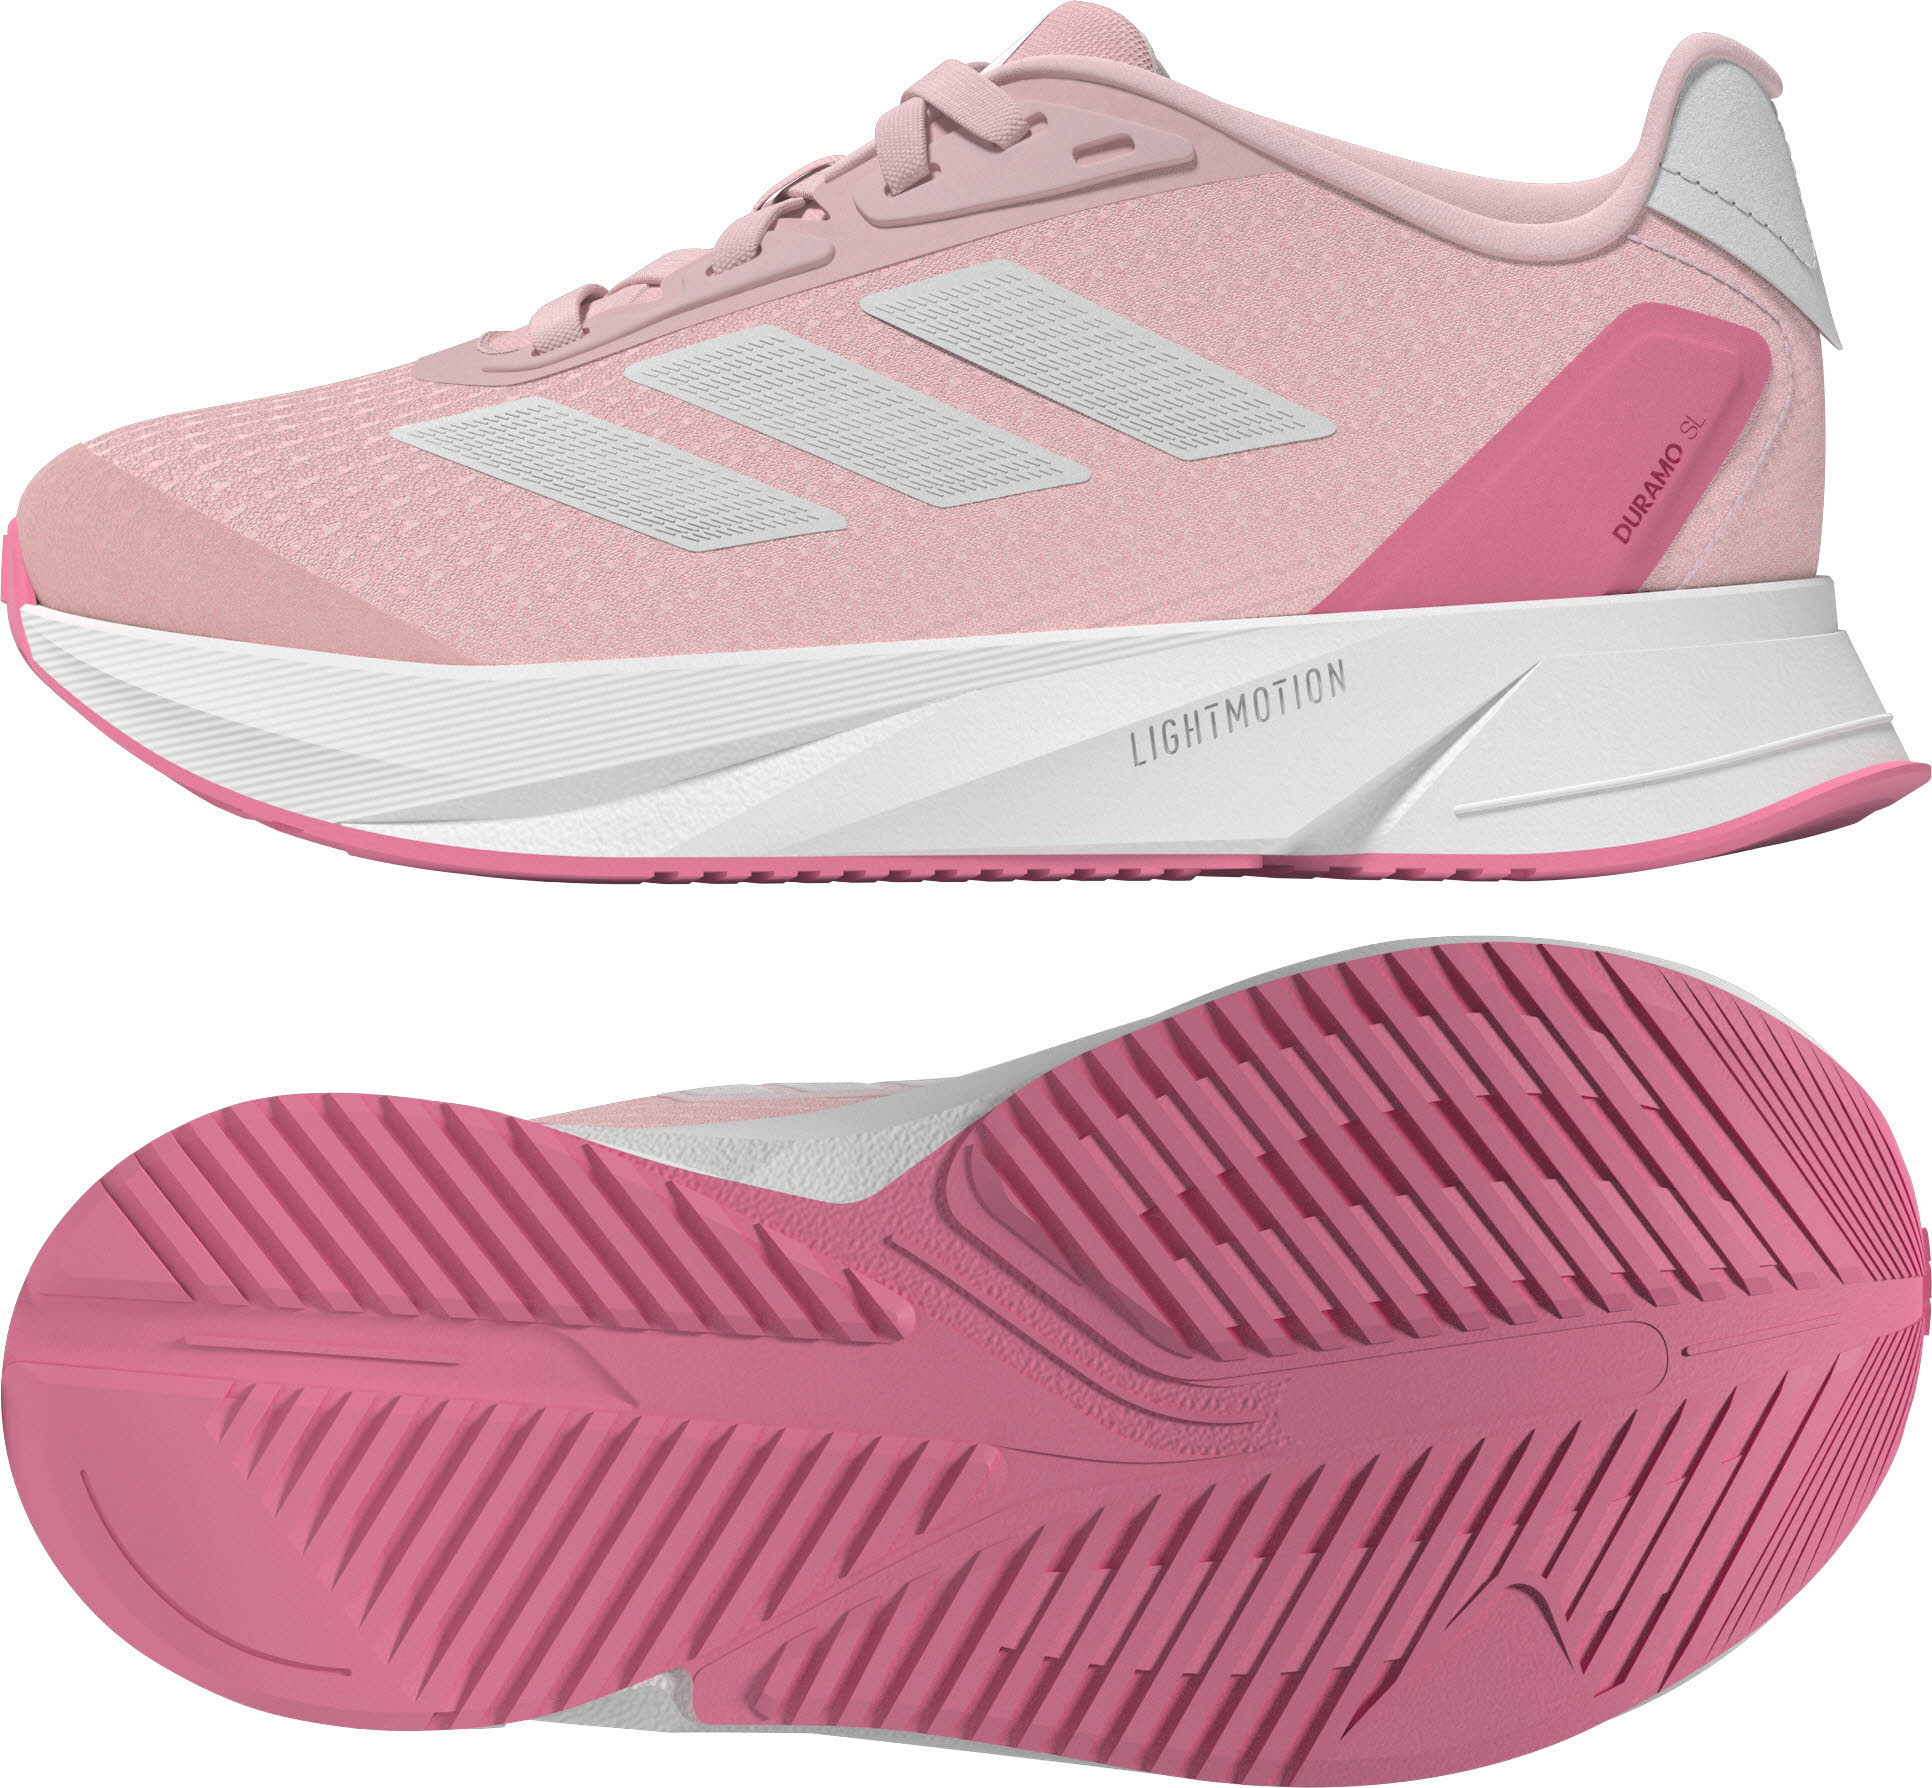 adidas Duramo SL K Mädchen Lifestyle-Schuhe Sportschuhe pink